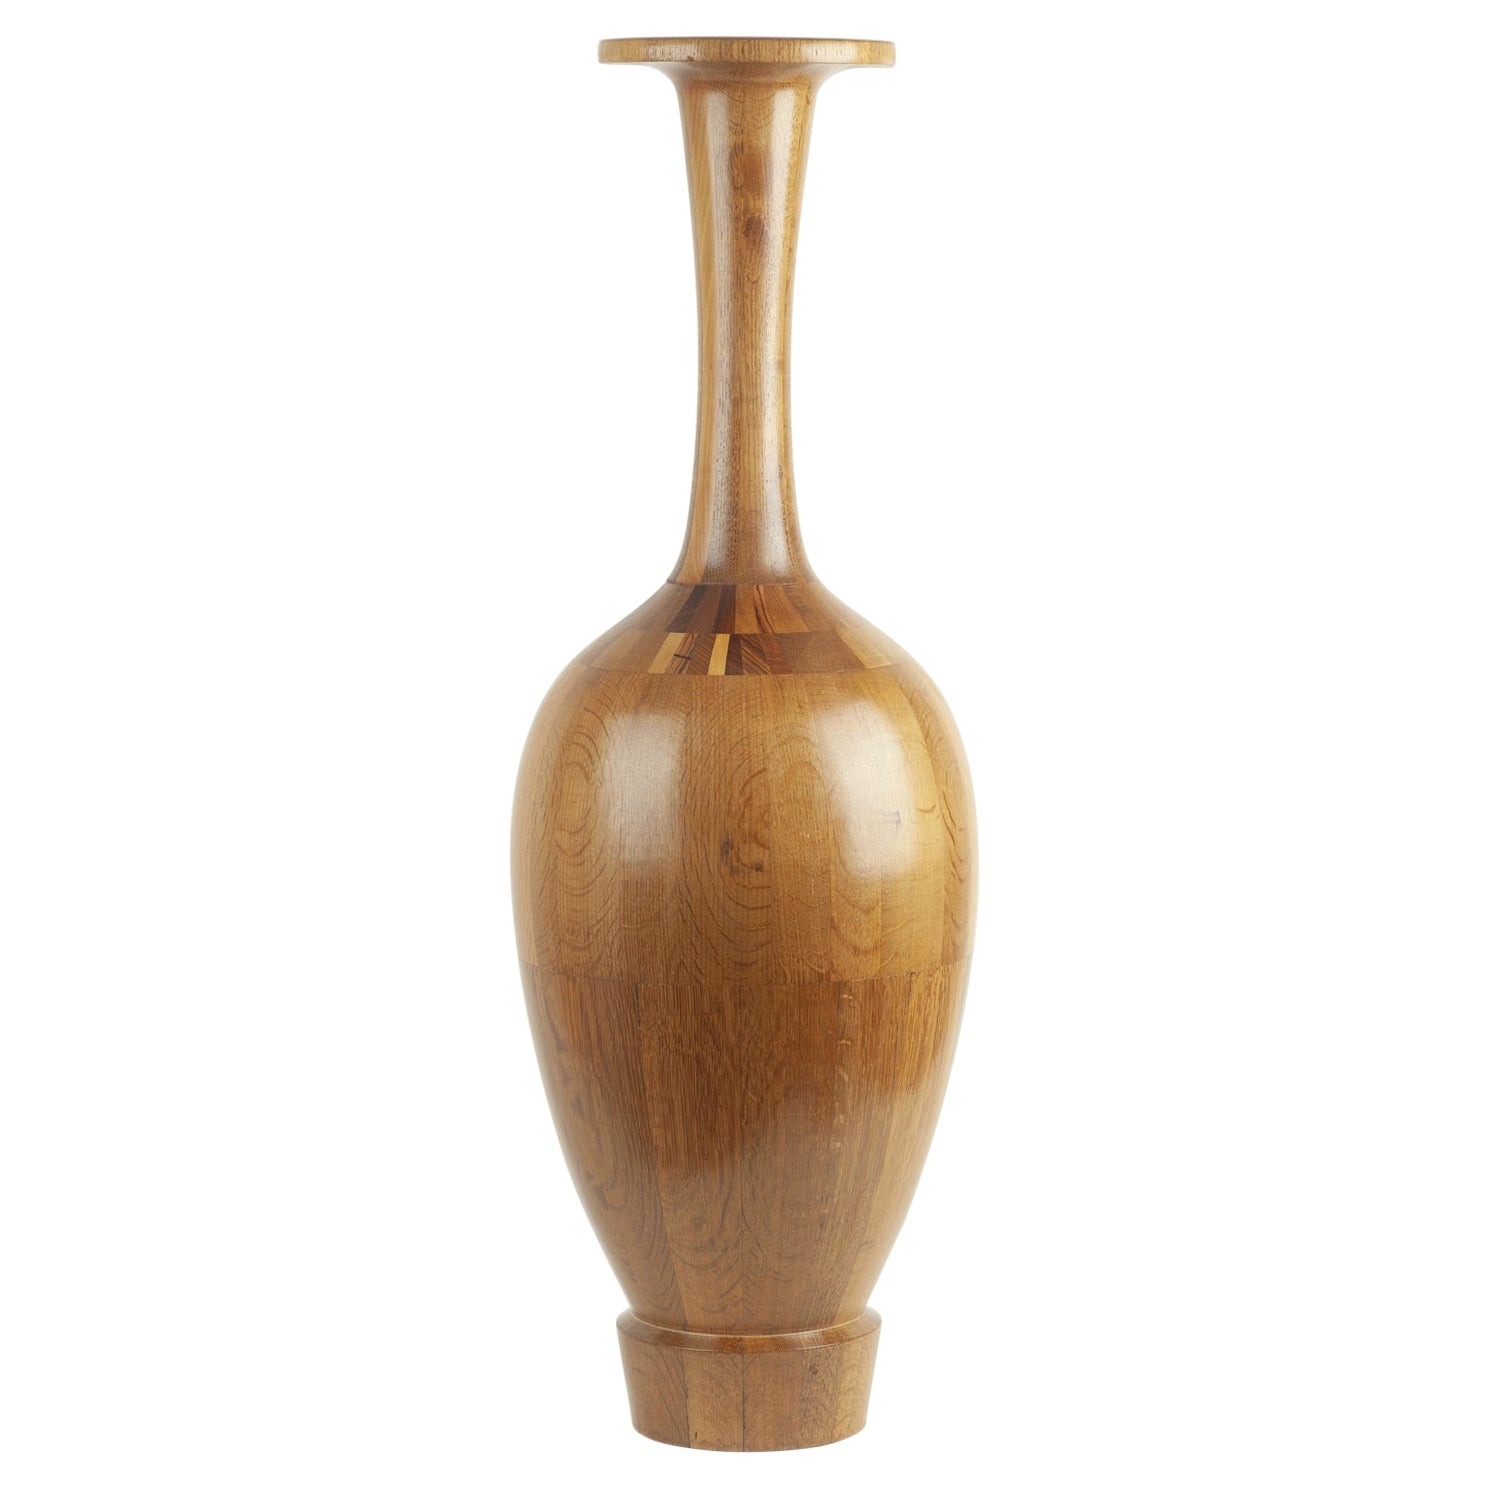 Grand vase en bois de Maurice Bonami, attribué à De Coene Frres